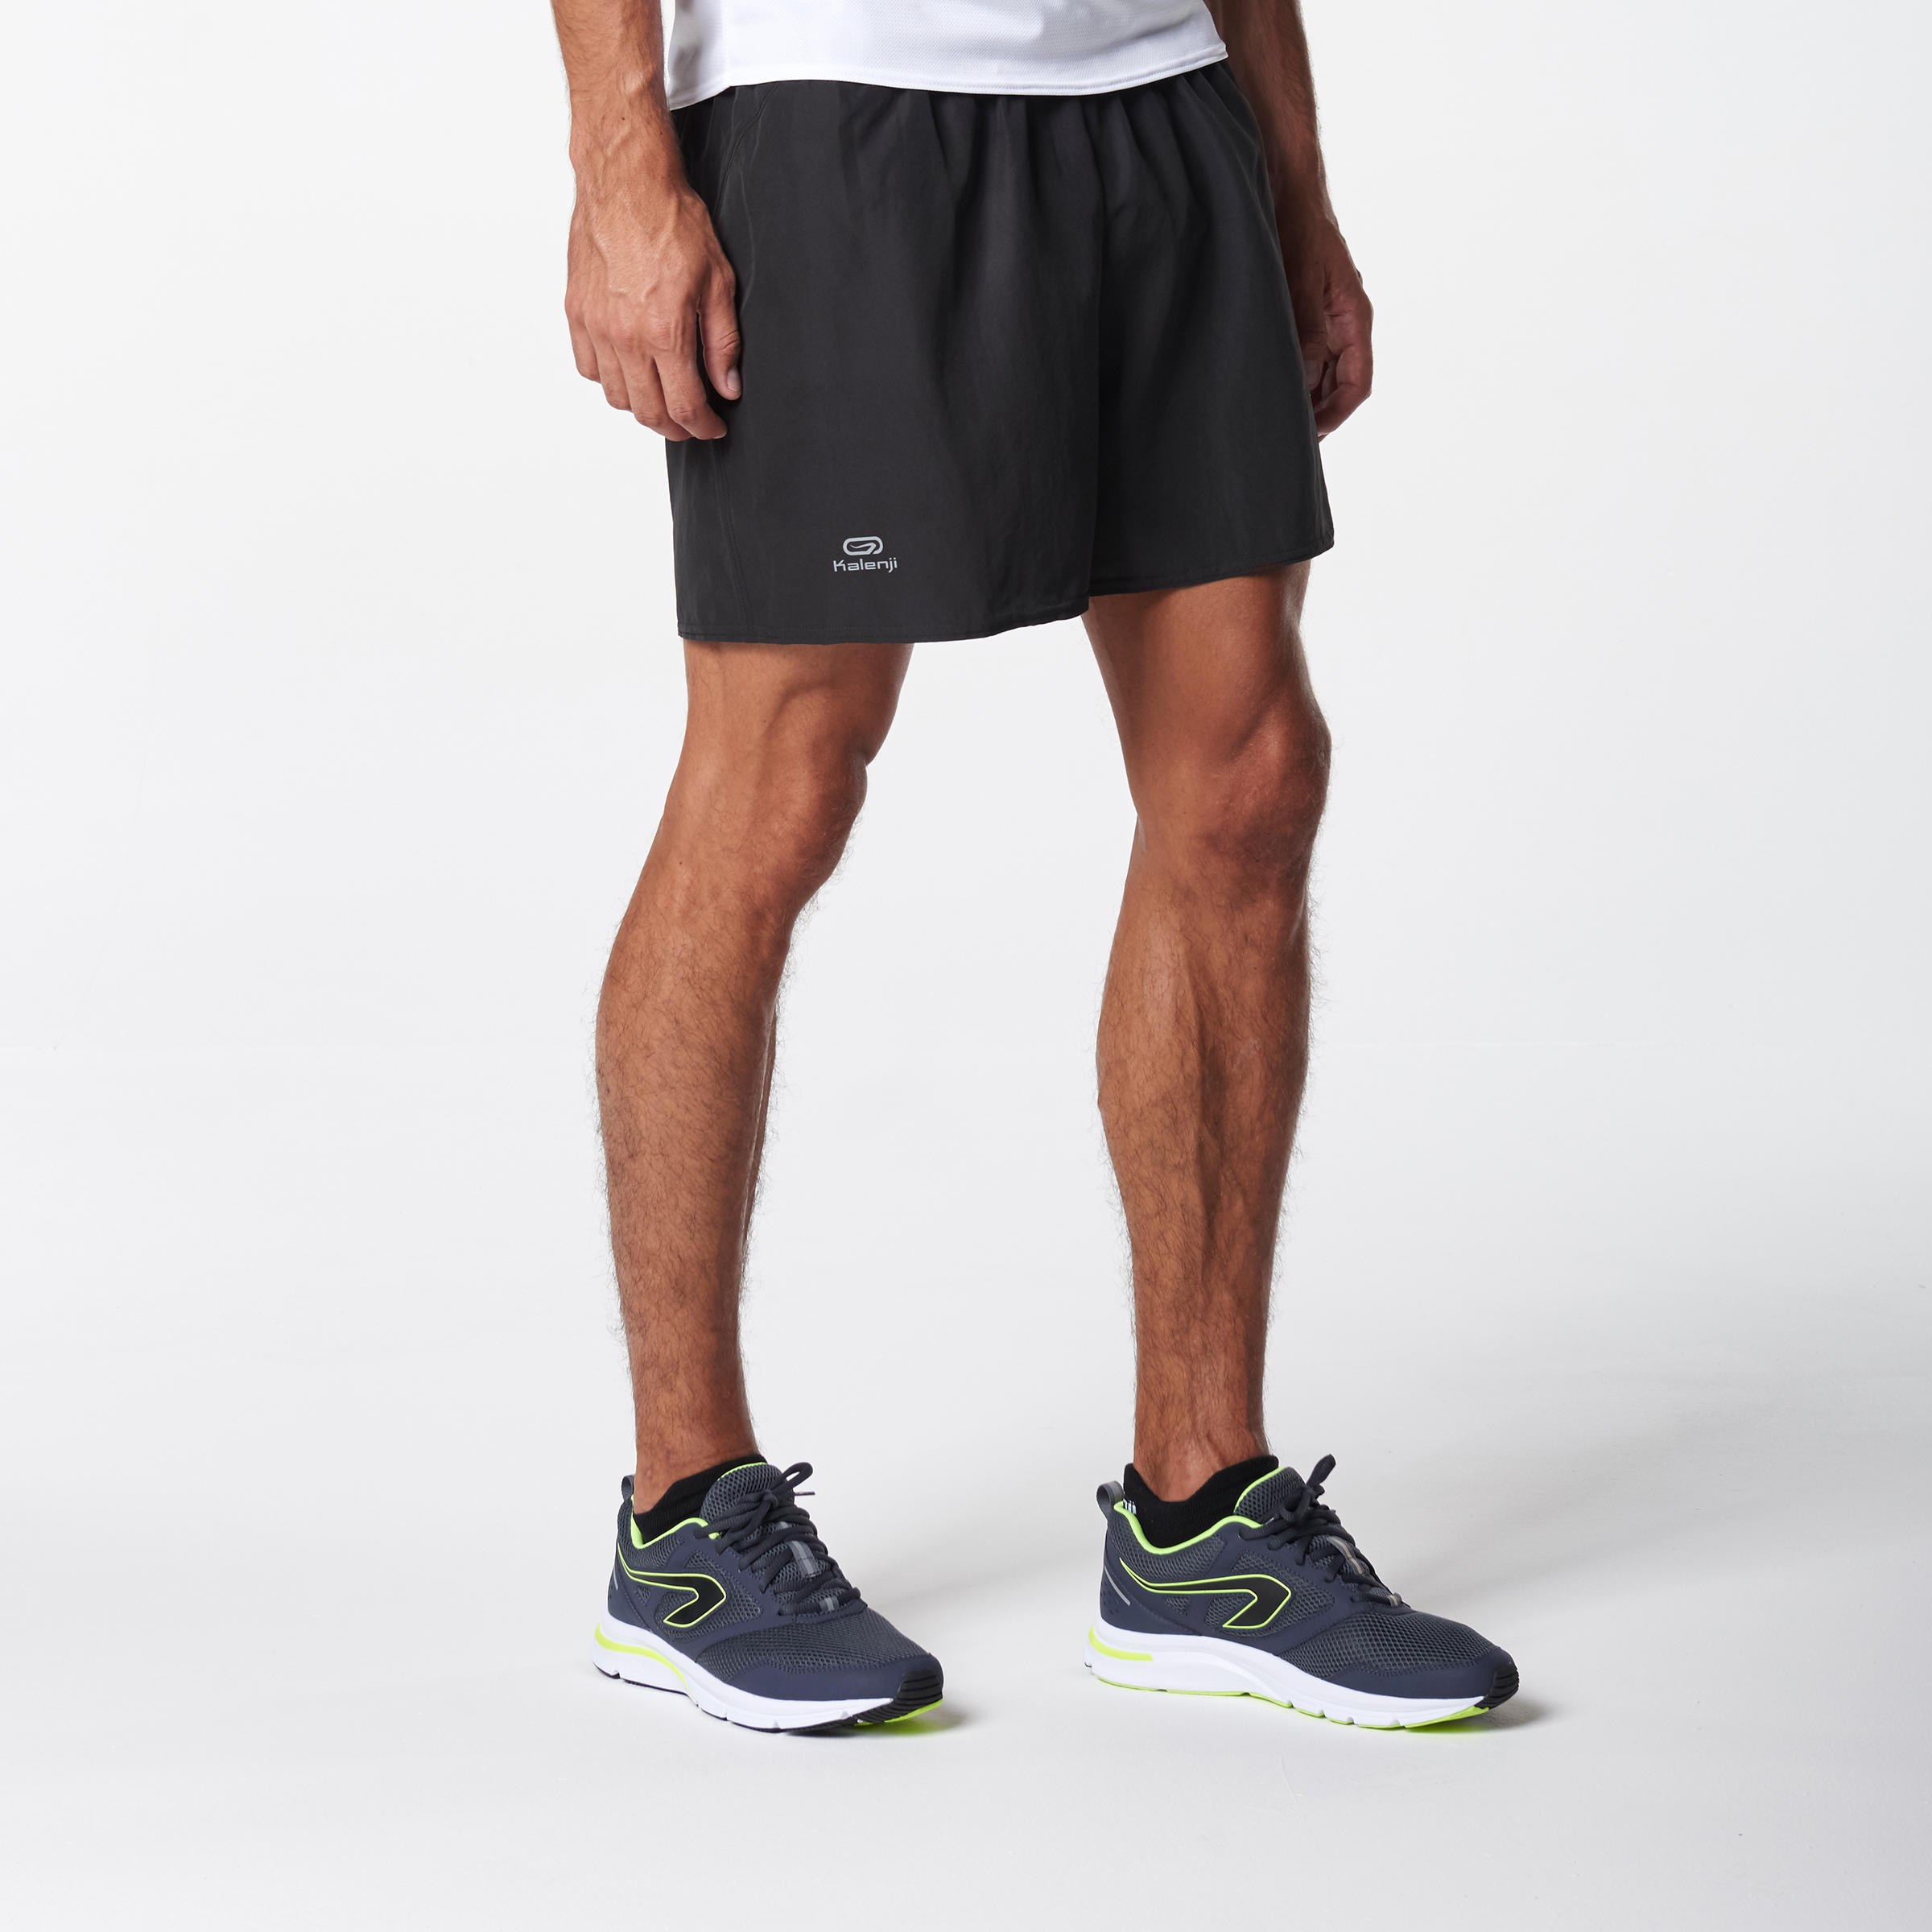 decathlon mens running shorts